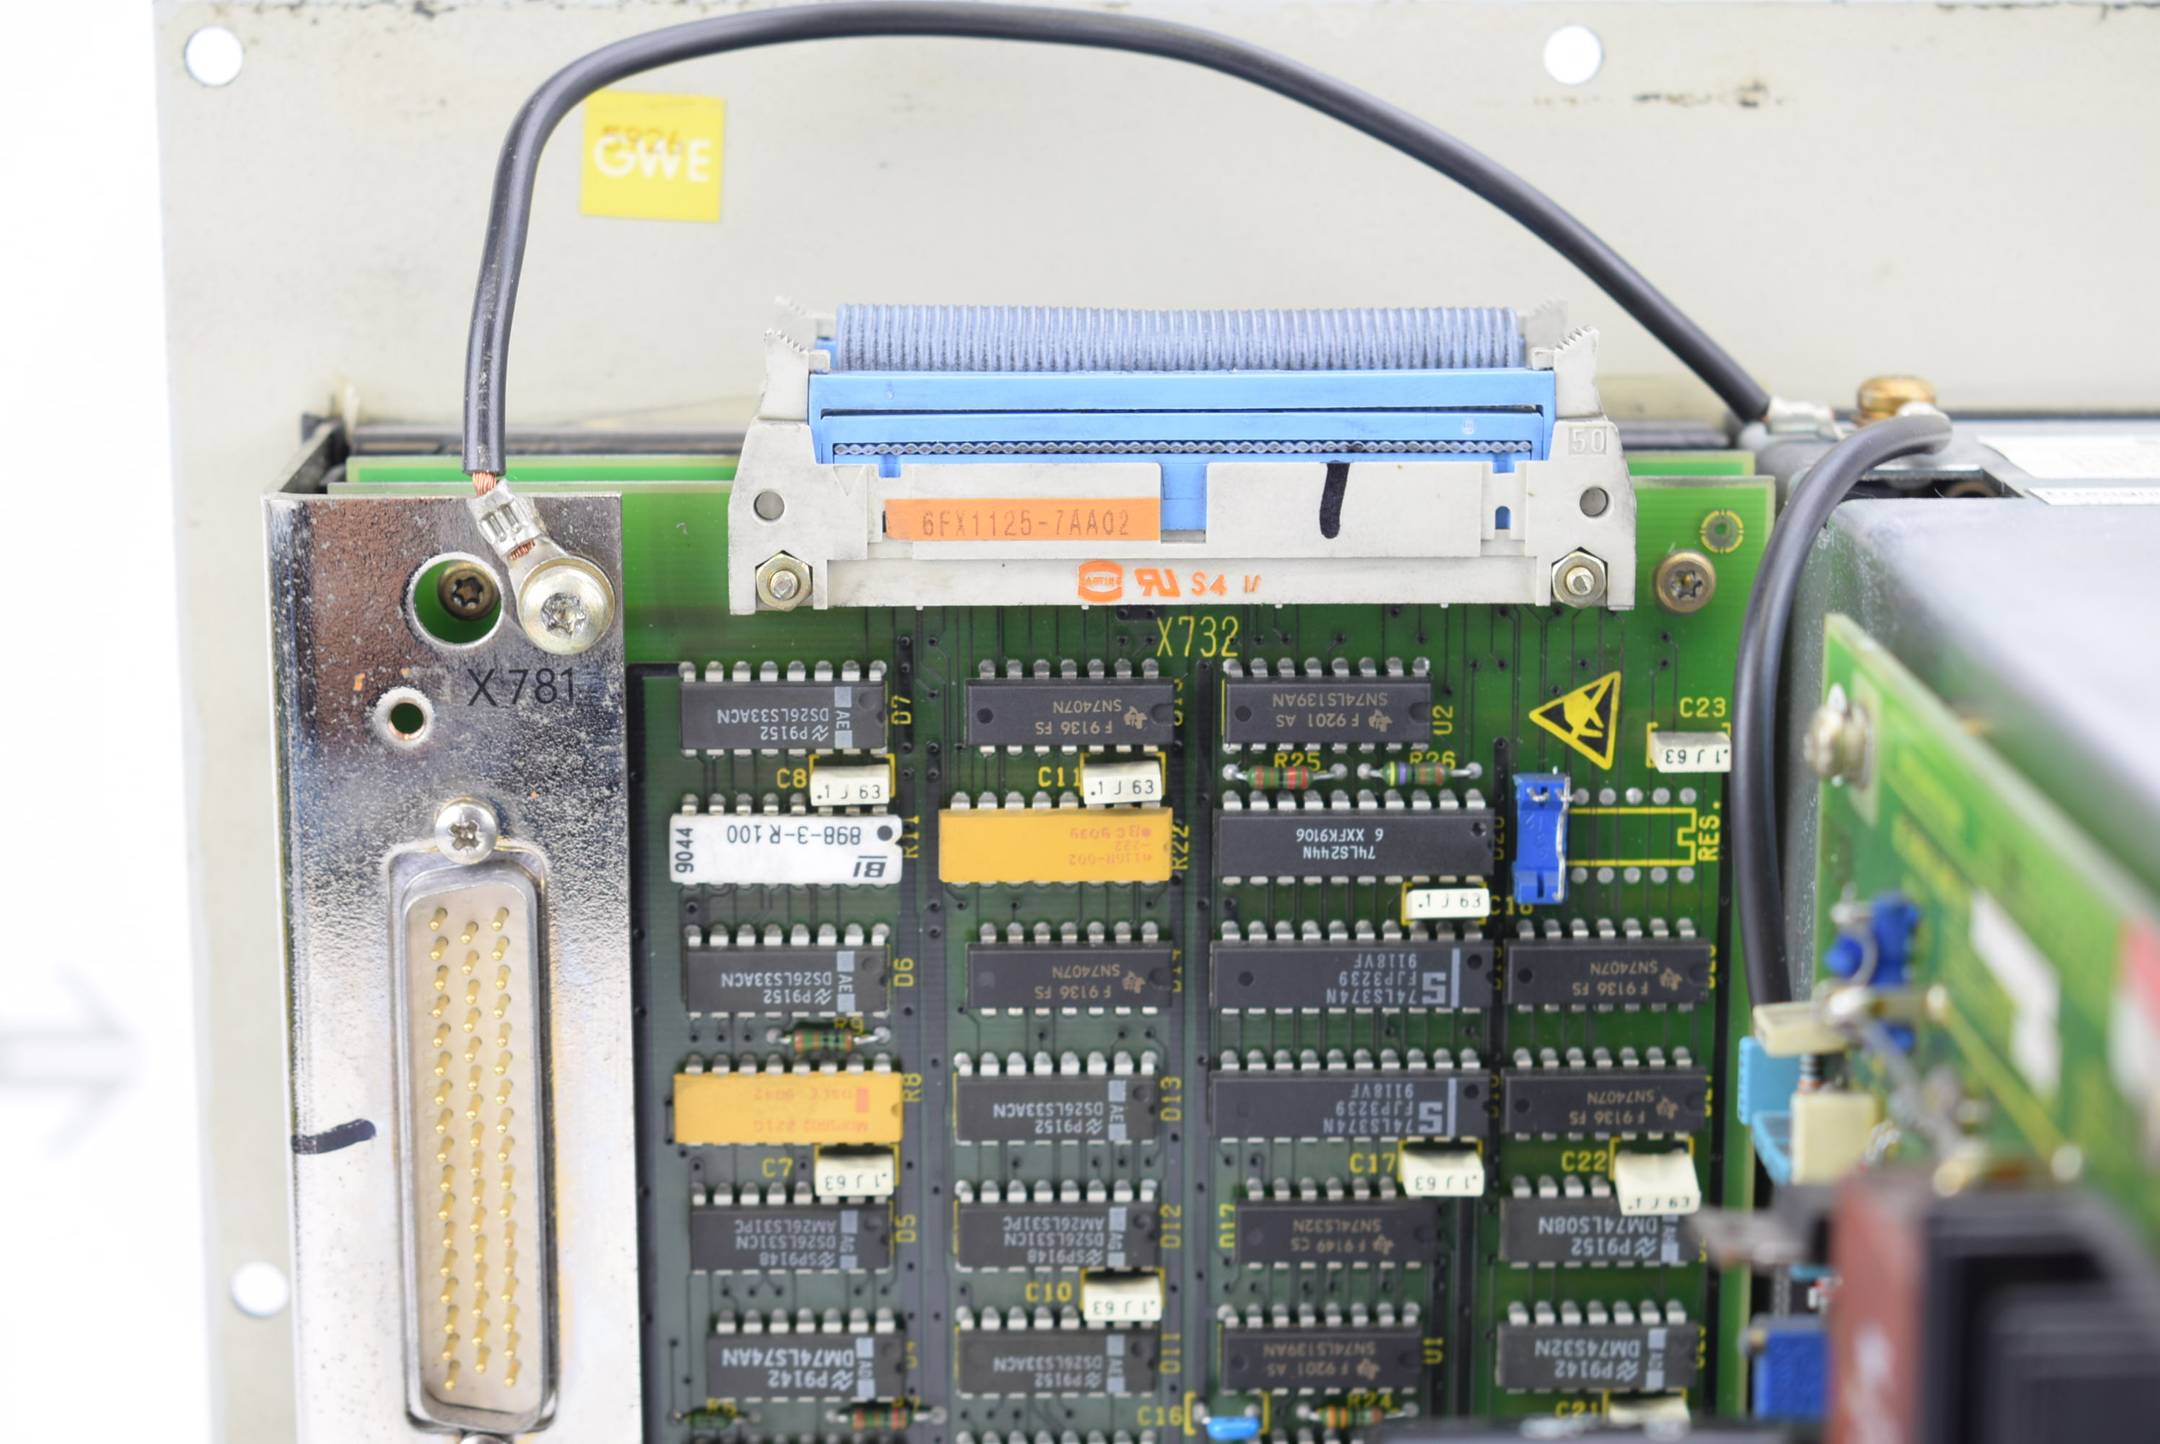 Siemens Sinumerik 3T/TT 4B/4C Bedientafel mit 9" Monitor 6FC3888-5MB inkl.  6FX1125-7AA02